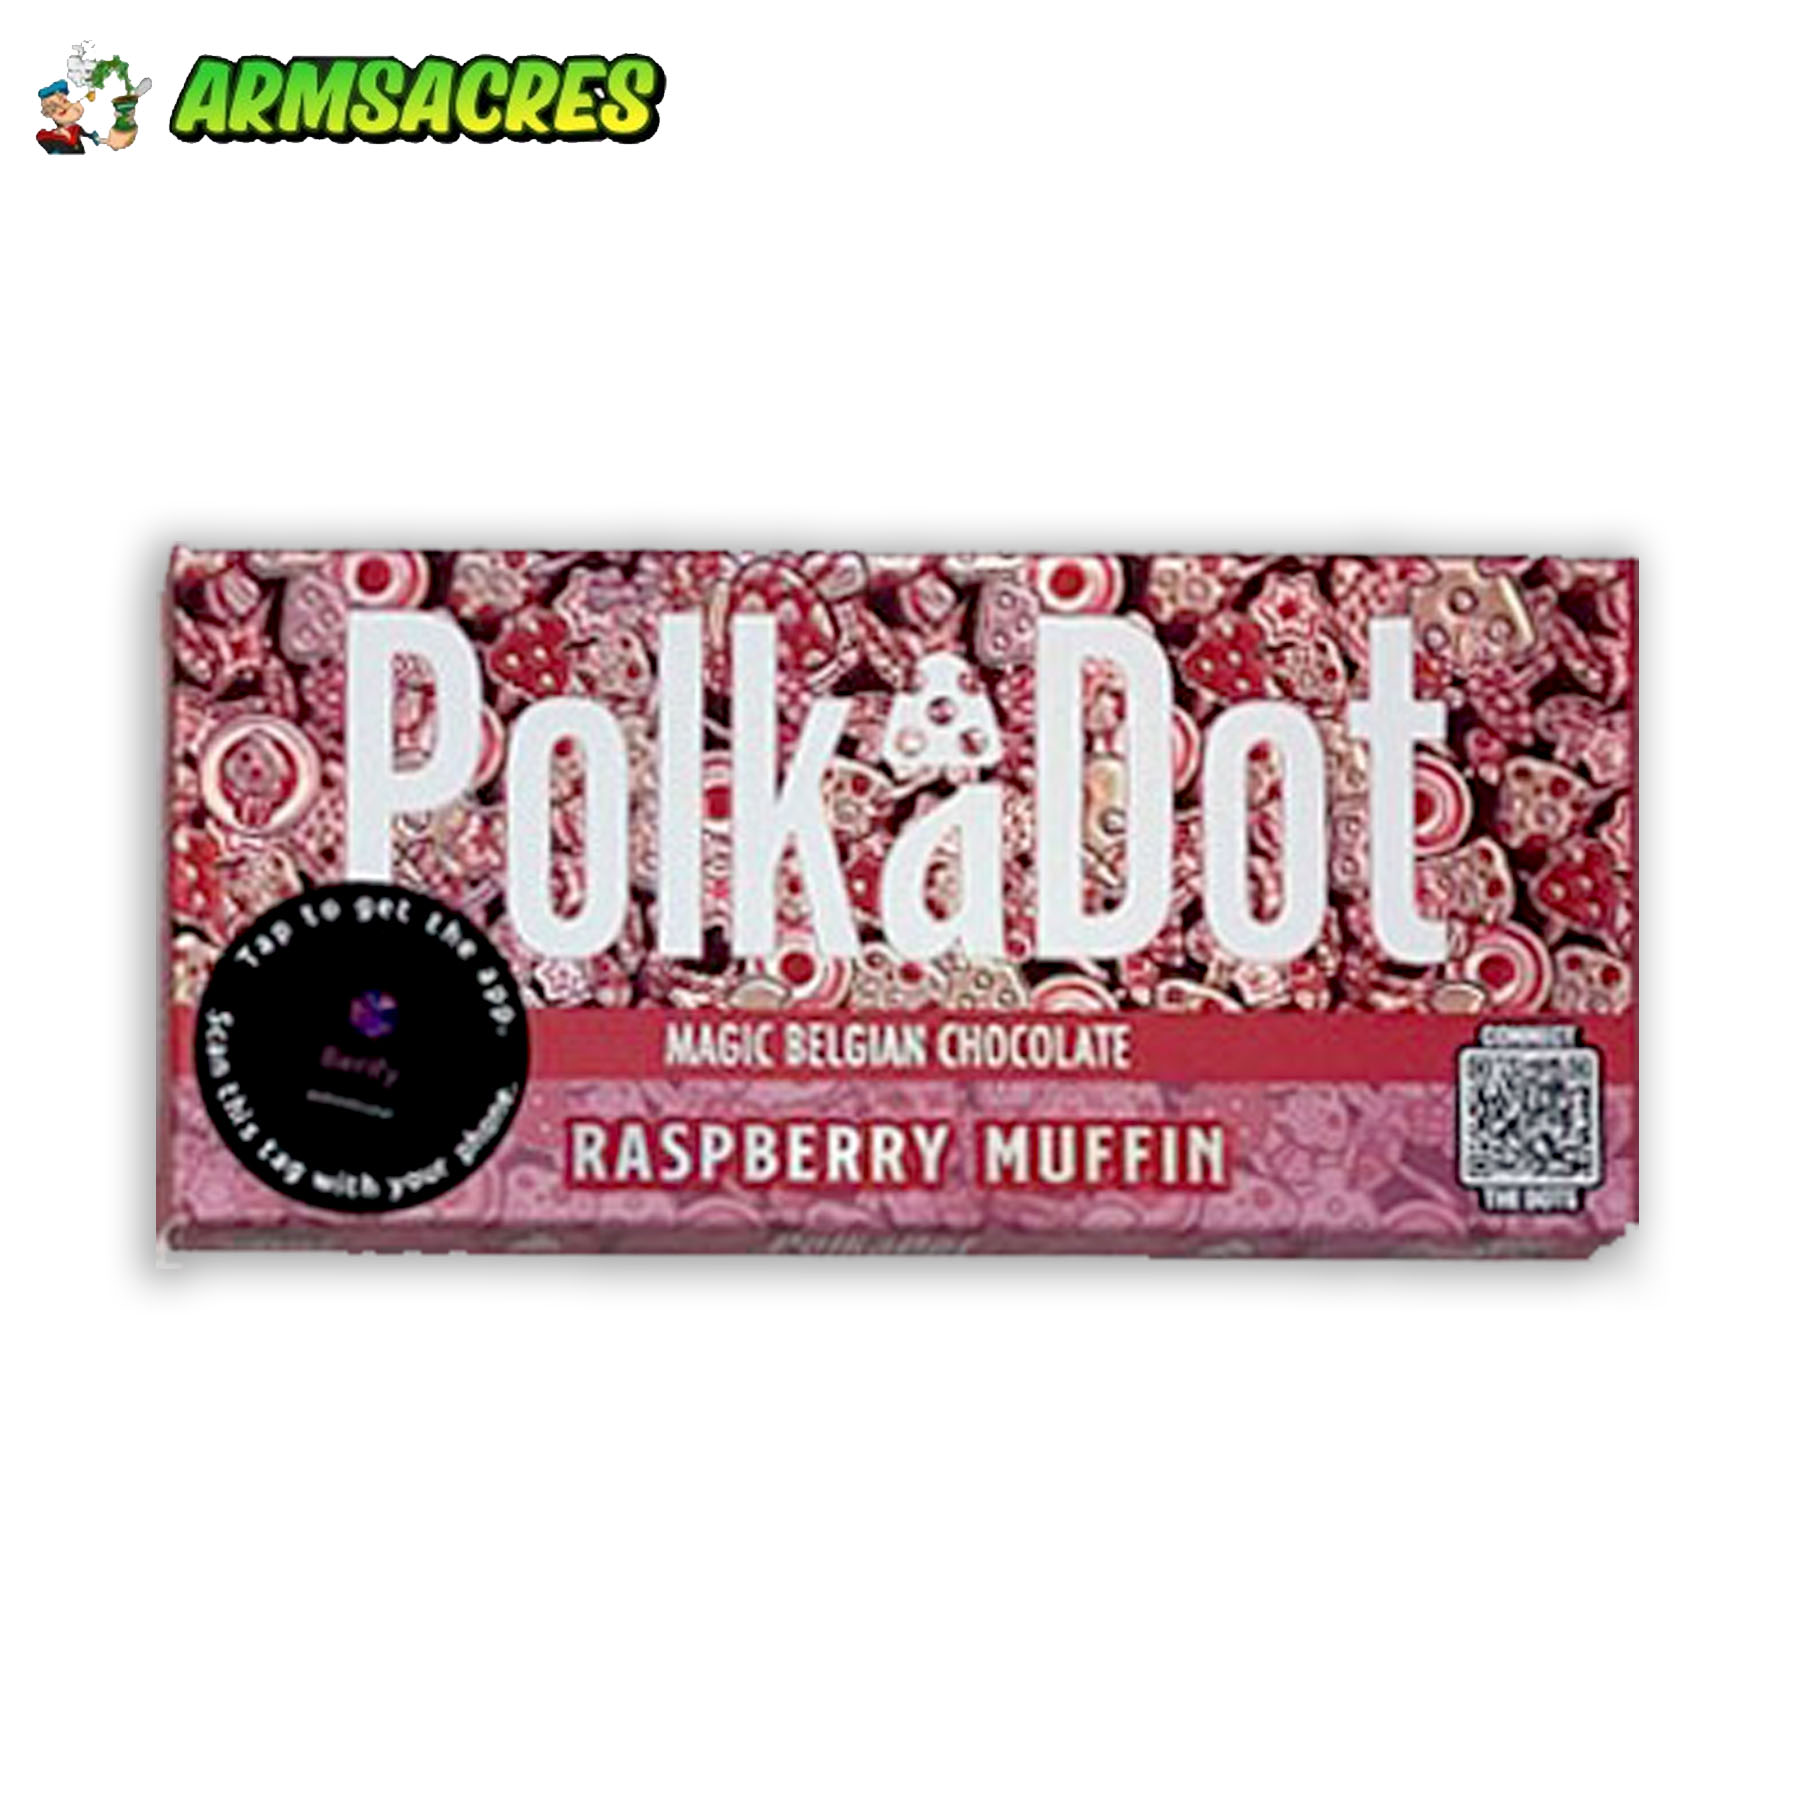 Polkadot – Raspberry Muffin shroom bar